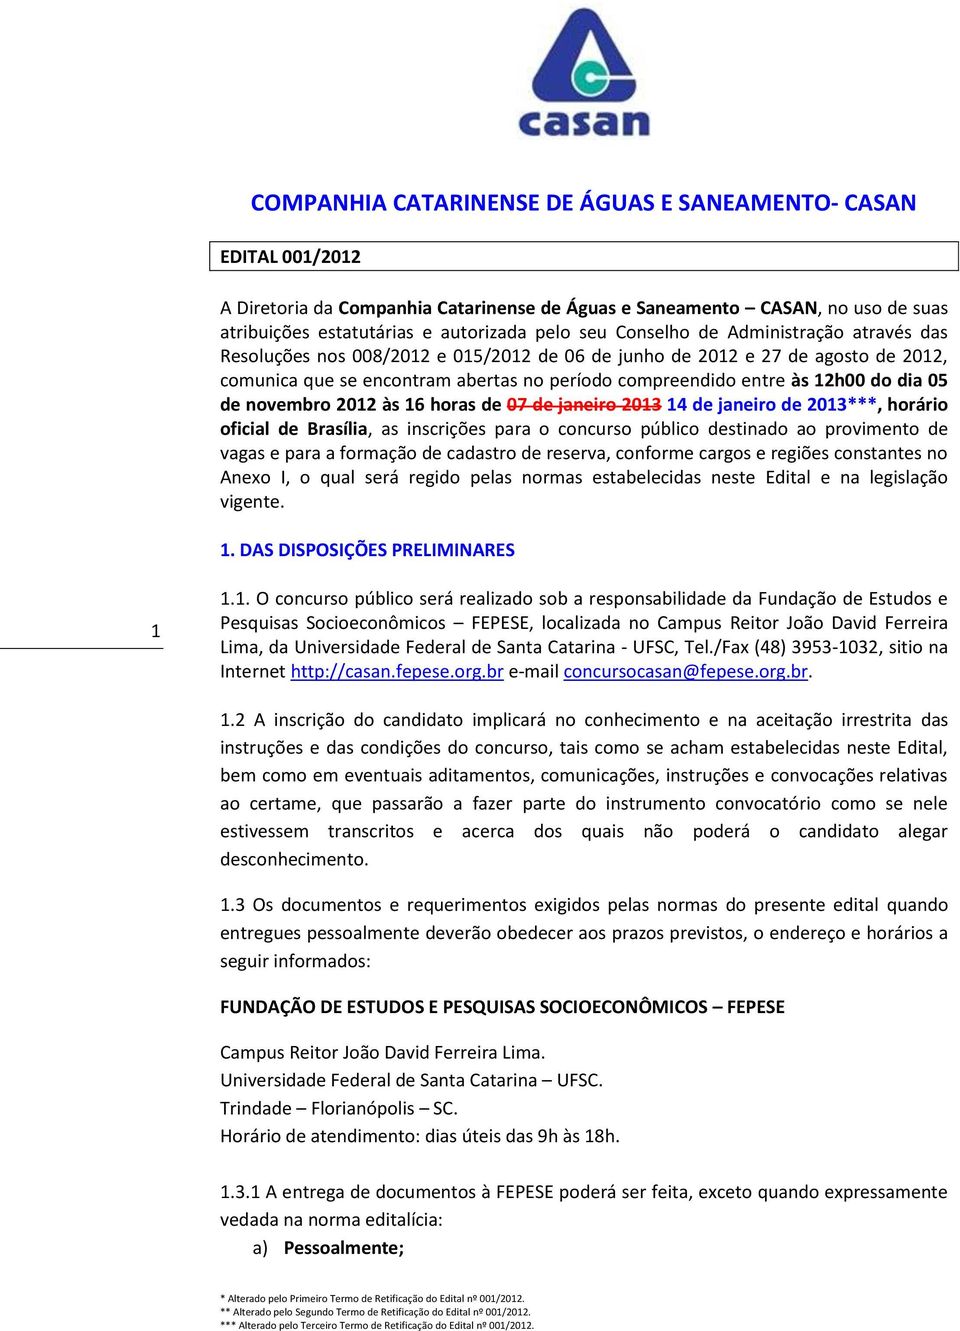 05 de novembro 2012 às 16 horas de 07 de janeiro 2013 14 de janeiro de 2013***, horário oficial de Brasília, as inscrições para o concurso público destinado ao provimento de vagas e para a formação